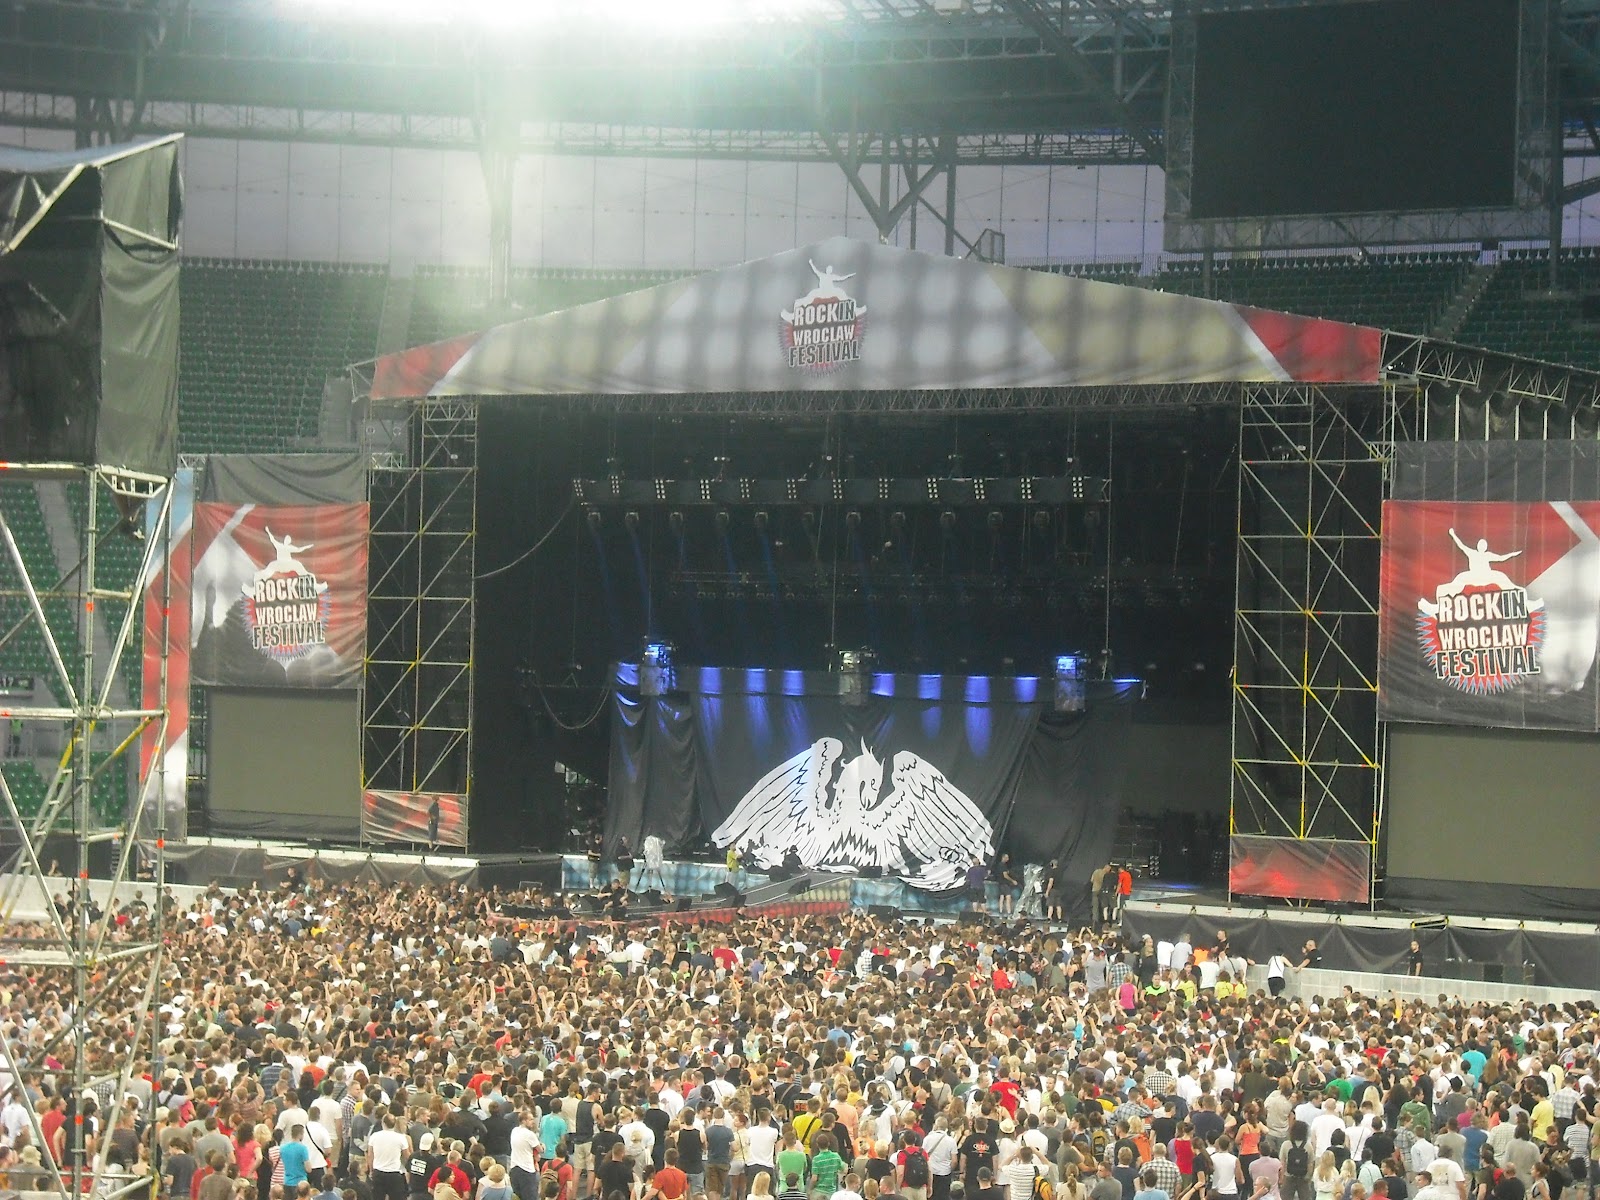 Rock in Wroclaw: Queen + Adam Lambert, Mona, IRA, Power of Trinity (Wrocław, Stadion Miejski - 7.07.2012)